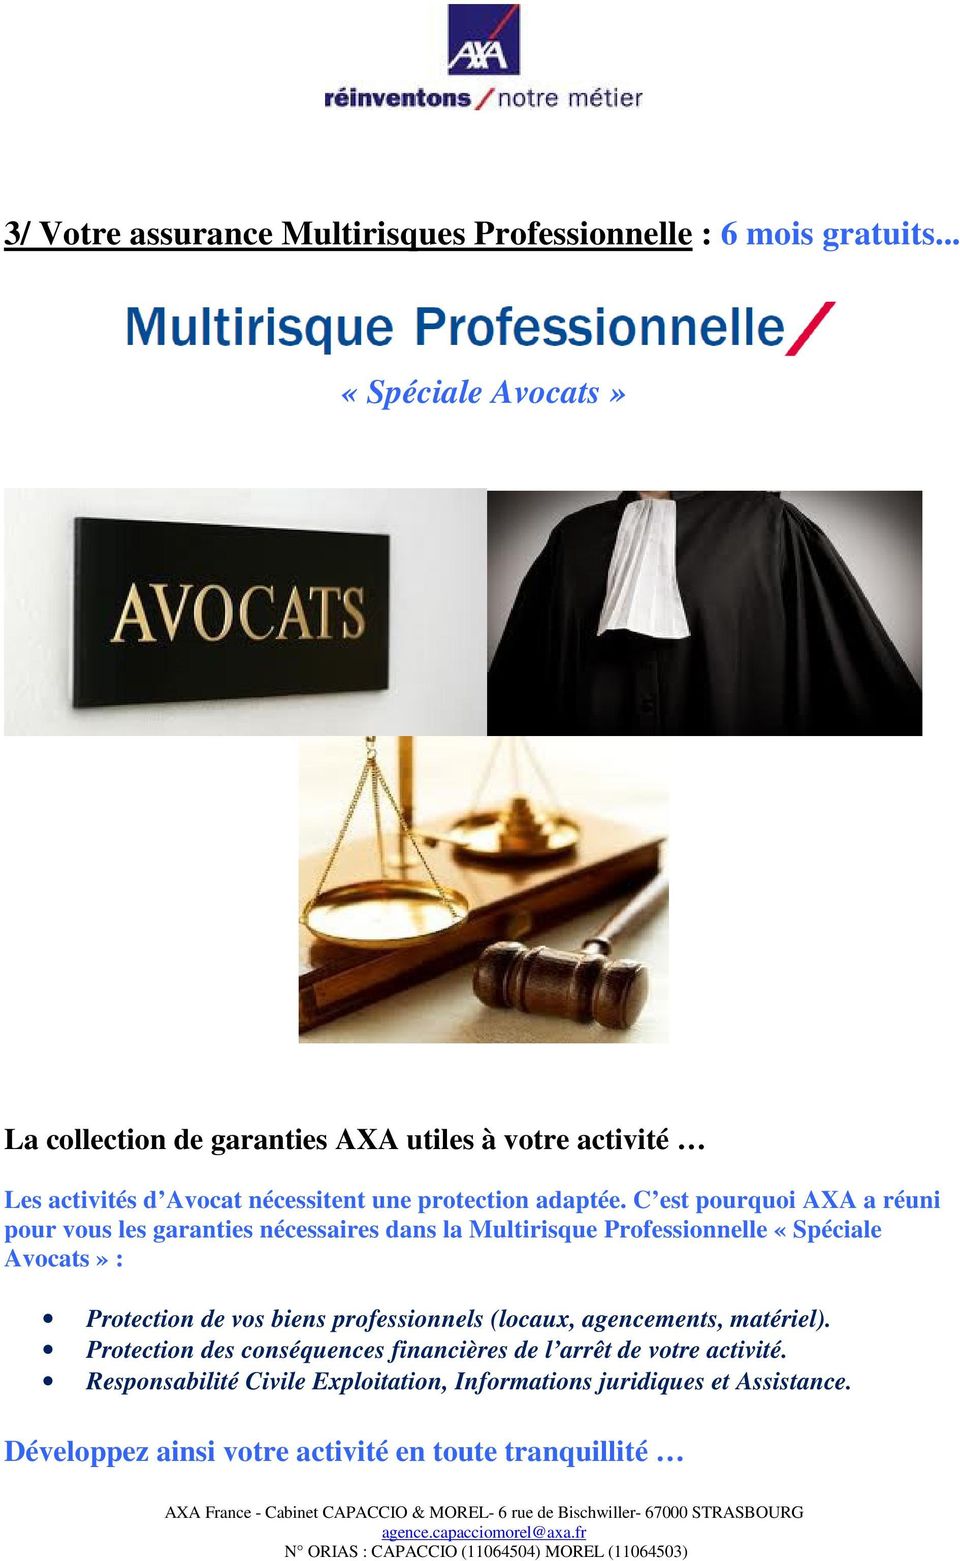 C est pourquoi AXA a réuni pour vous les garanties nécessaires dans la Multirisque Professionnelle «Spéciale Avocats» : Protection de vos biens